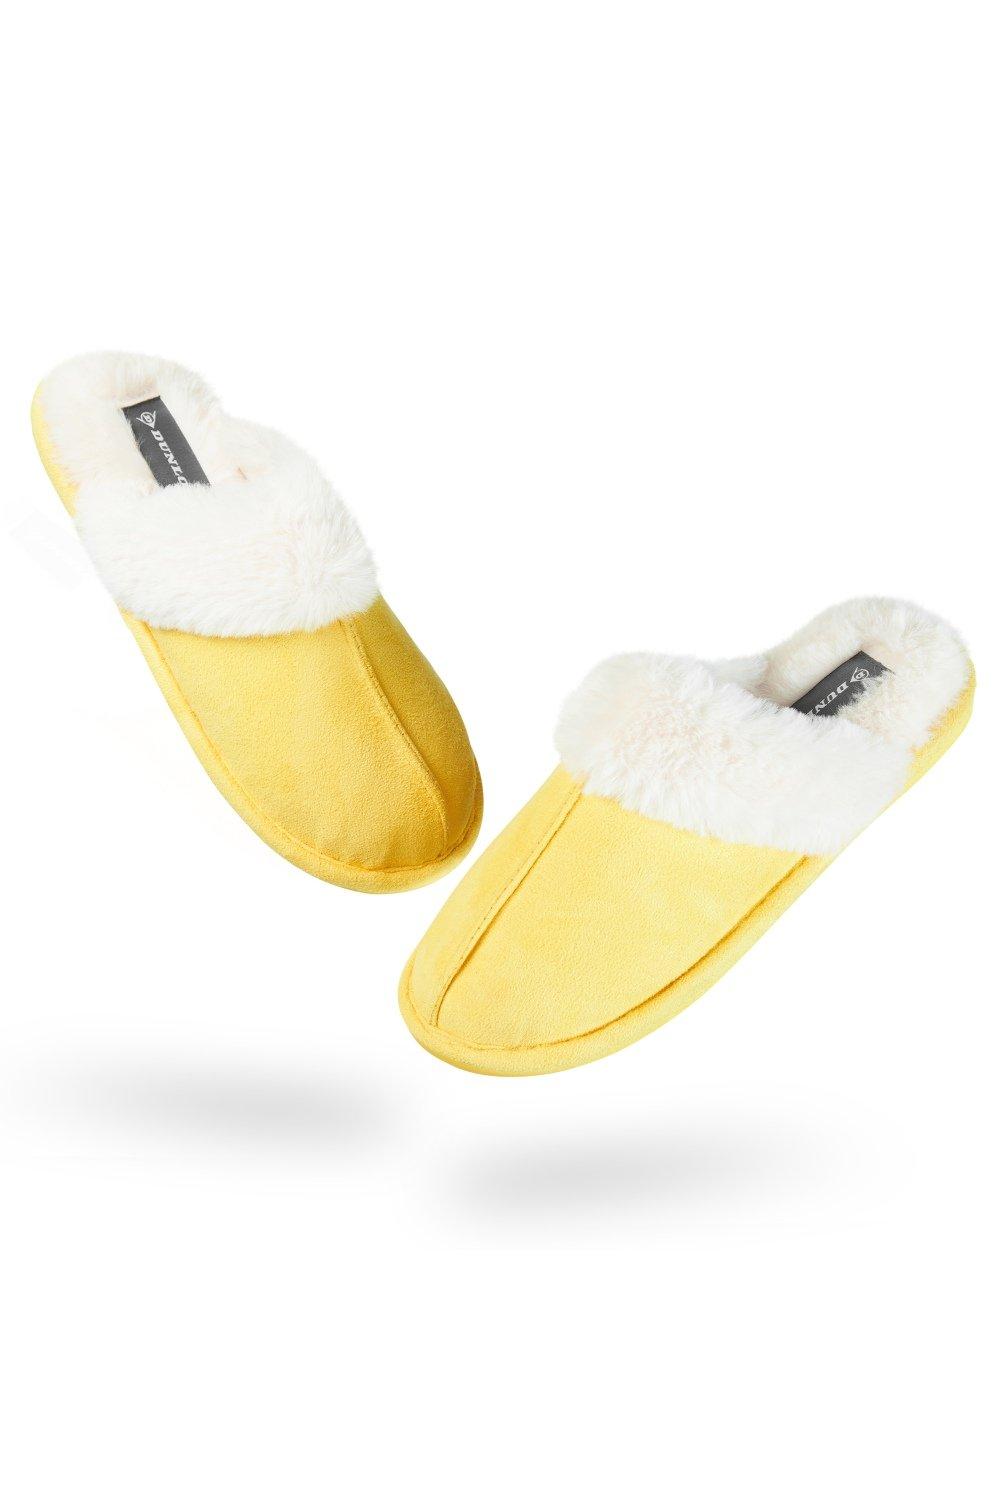 Домашние пушистые тапочки на толстой меховой подкладке Dunlop, желтый slides women sandals fur slides for women flat slippers for women slipper women summer slipper slippers women slippers